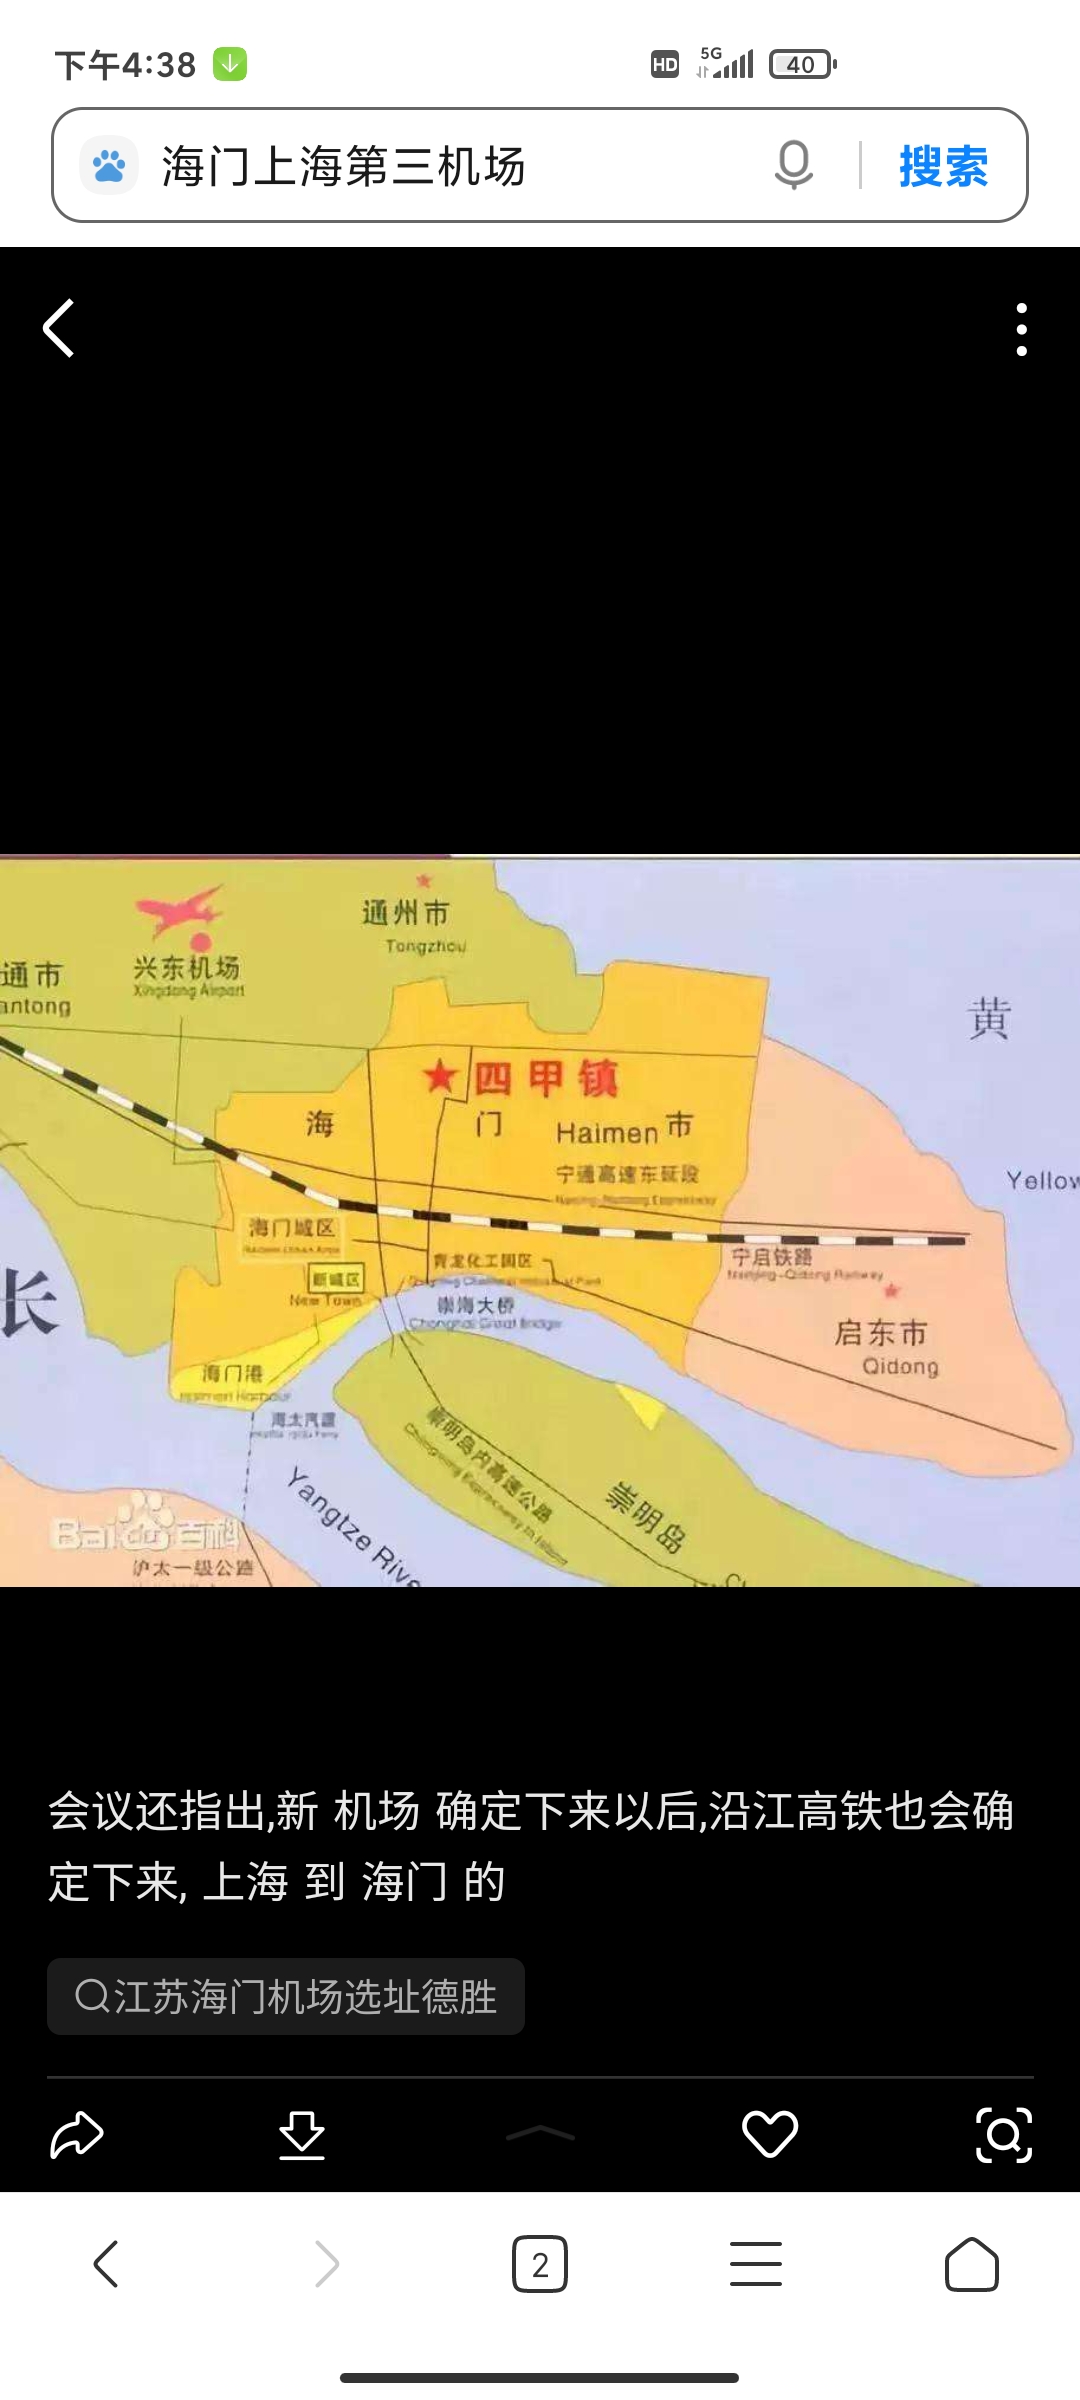 海门四还是二甲要做上海第三机场了吗?